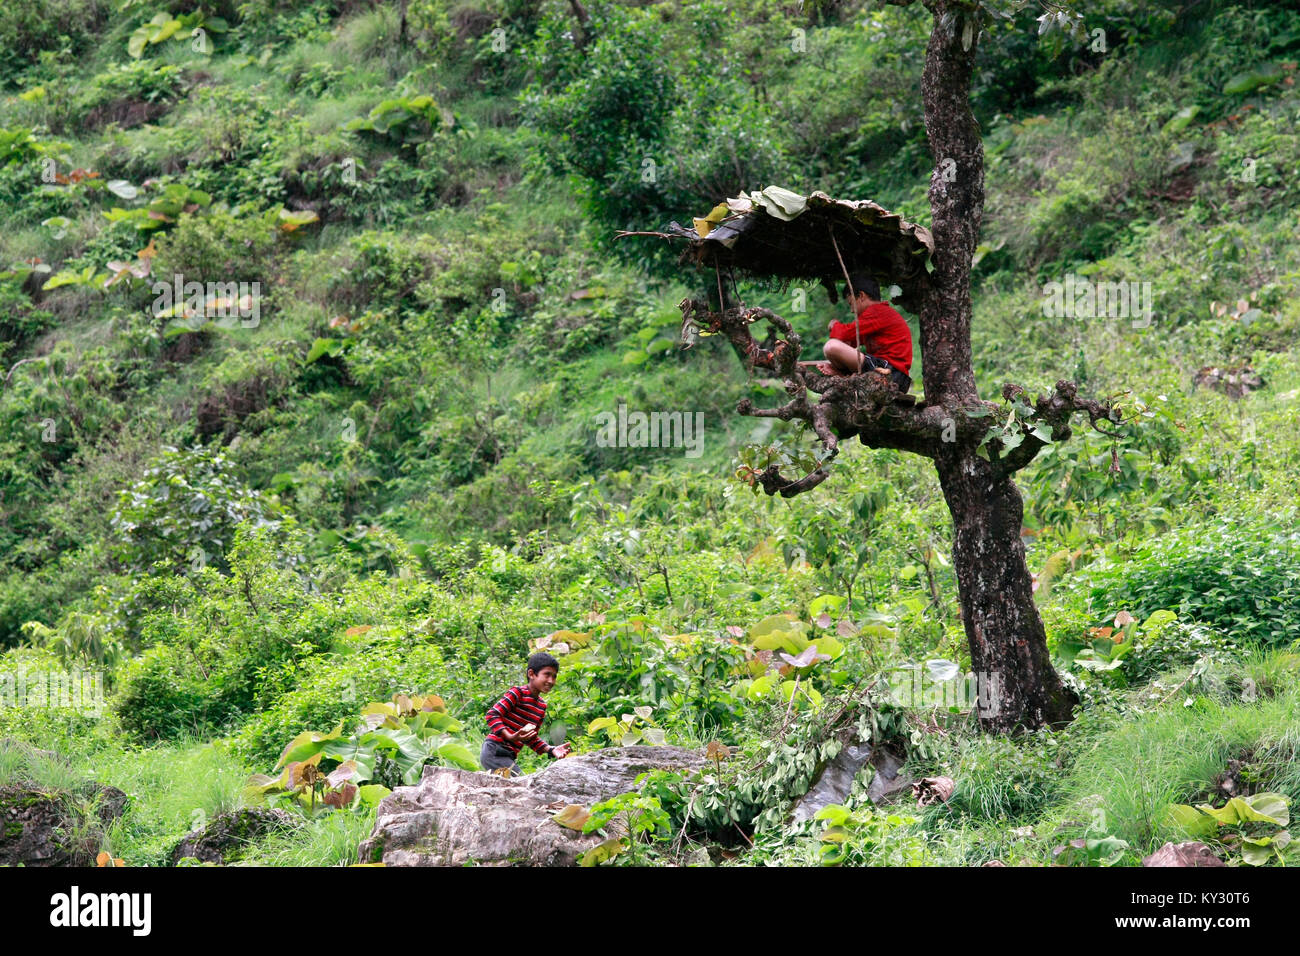 Ein kleiner Junge bringt Mittagessen an seinen Freund wartet in einer Hütte auf einem Baum gebaut. Stockfoto